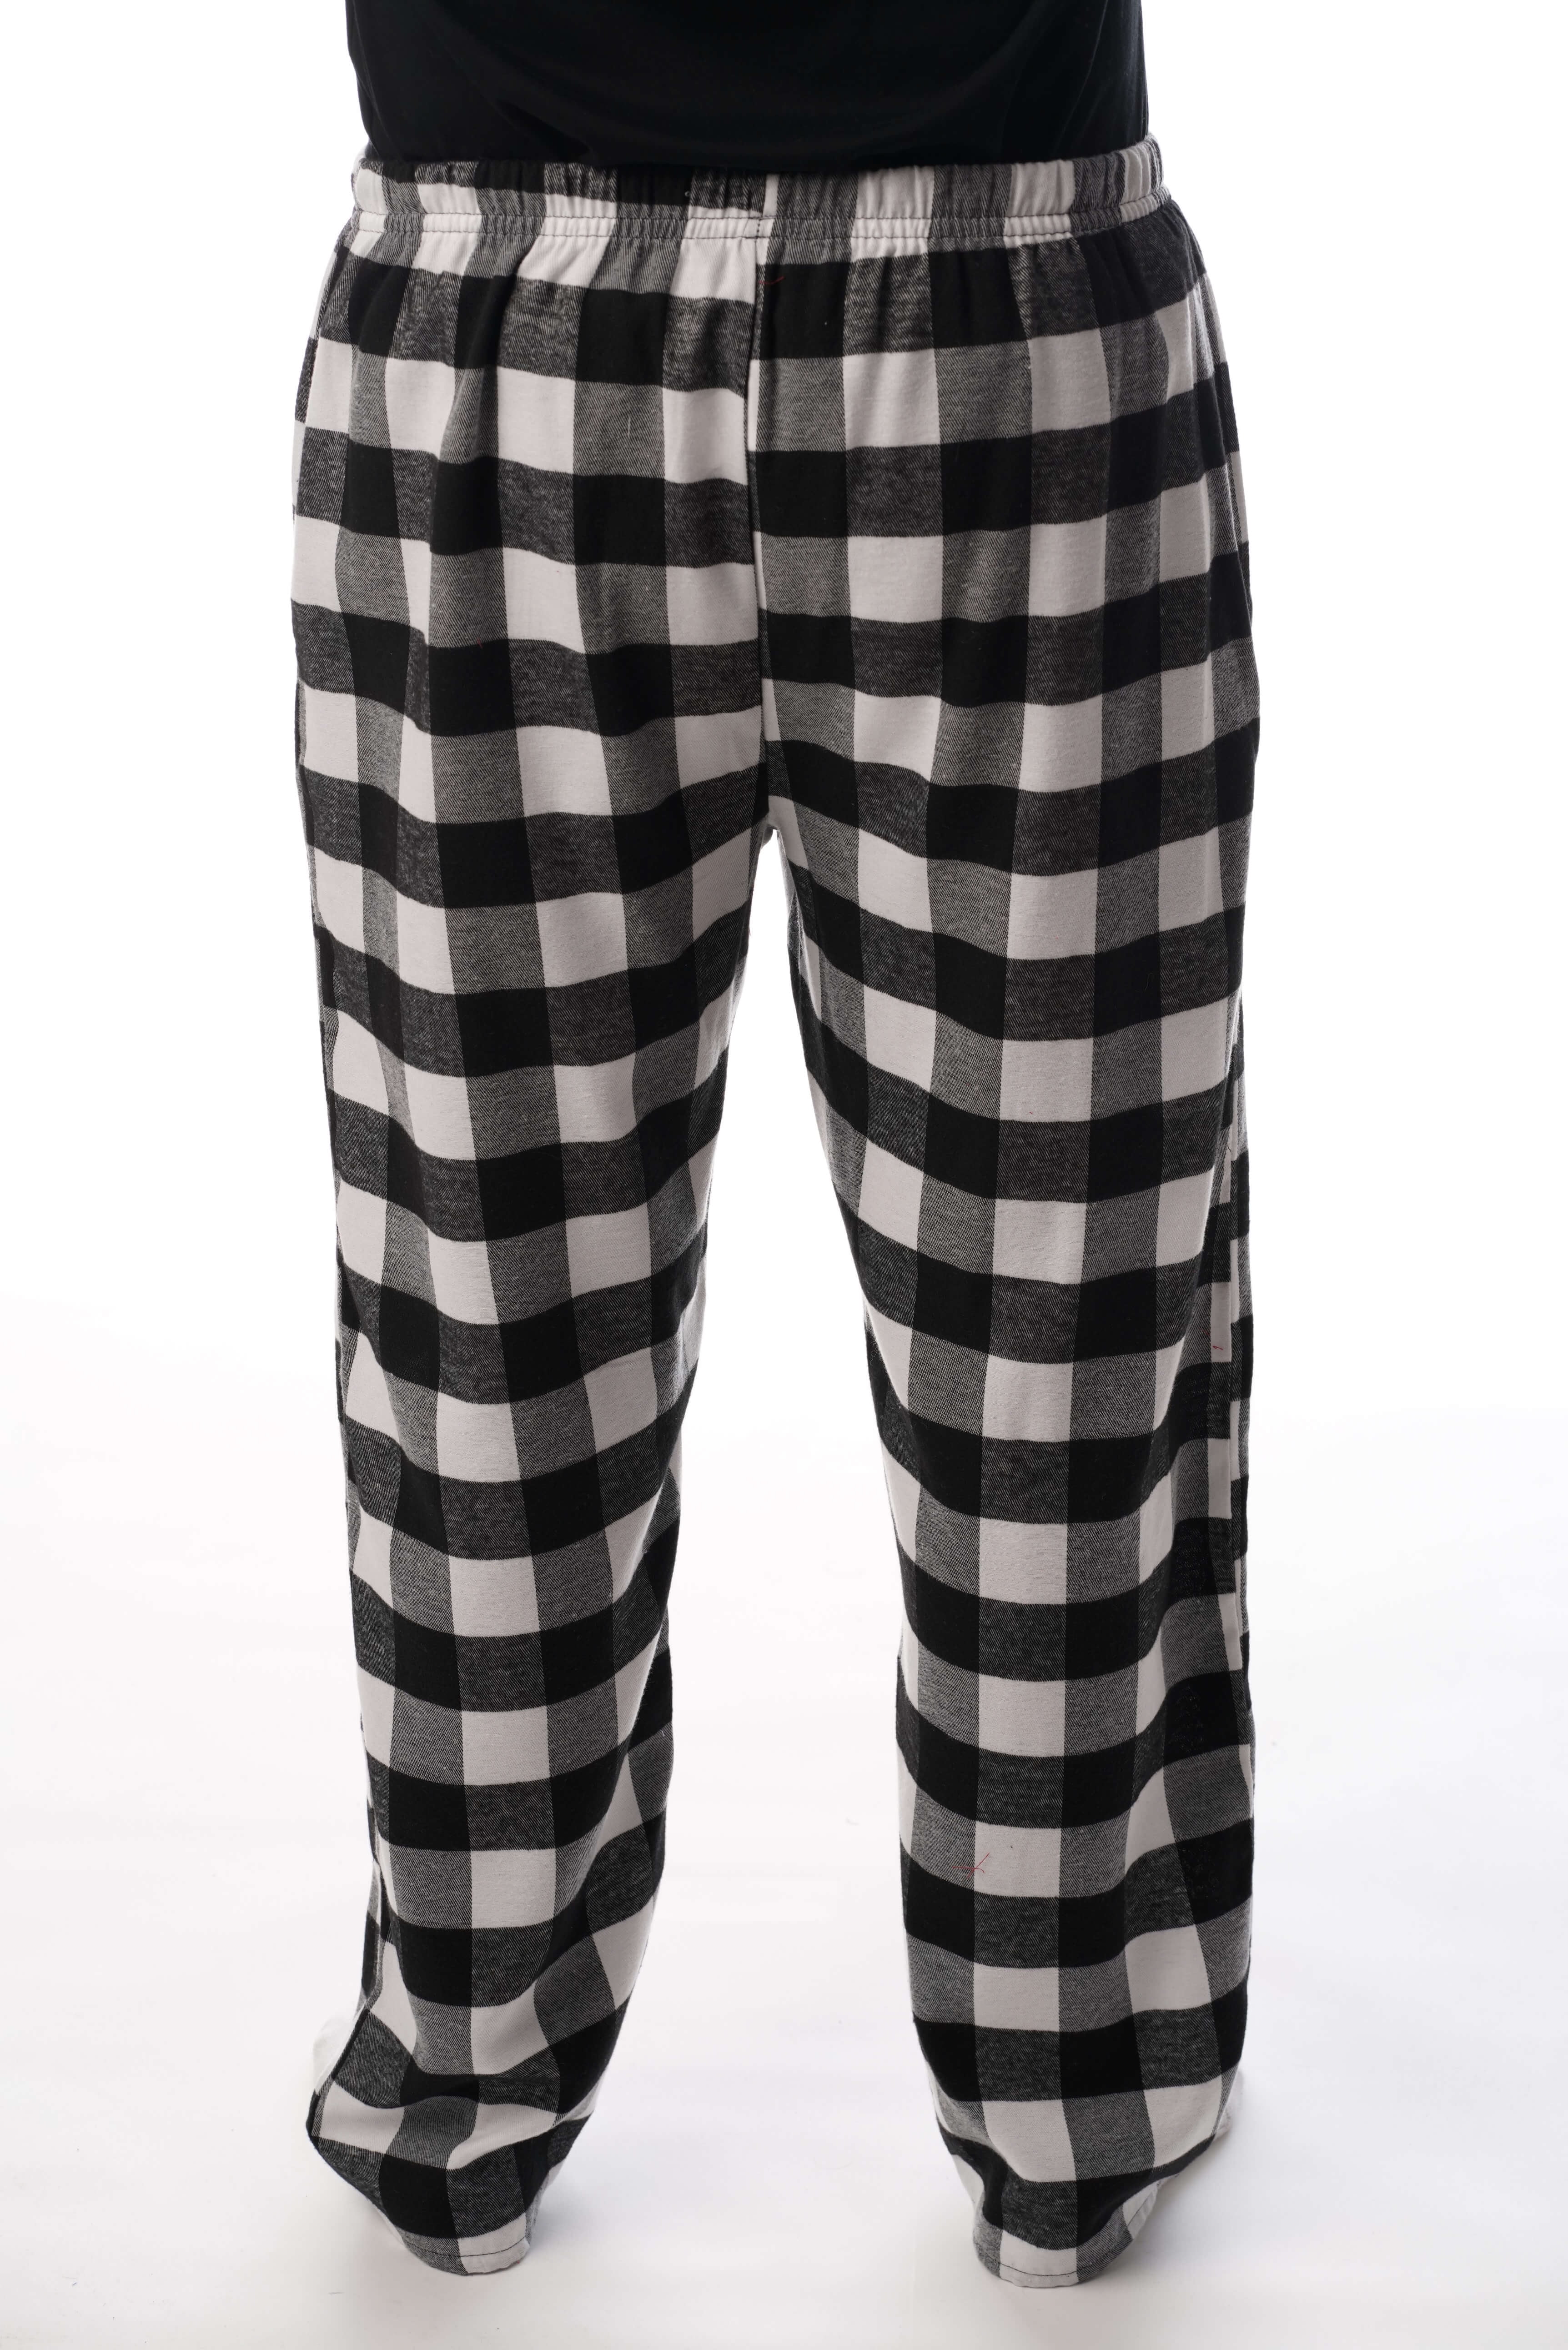 Men's Flannel Pajama Pants Walmart | art-kk.com